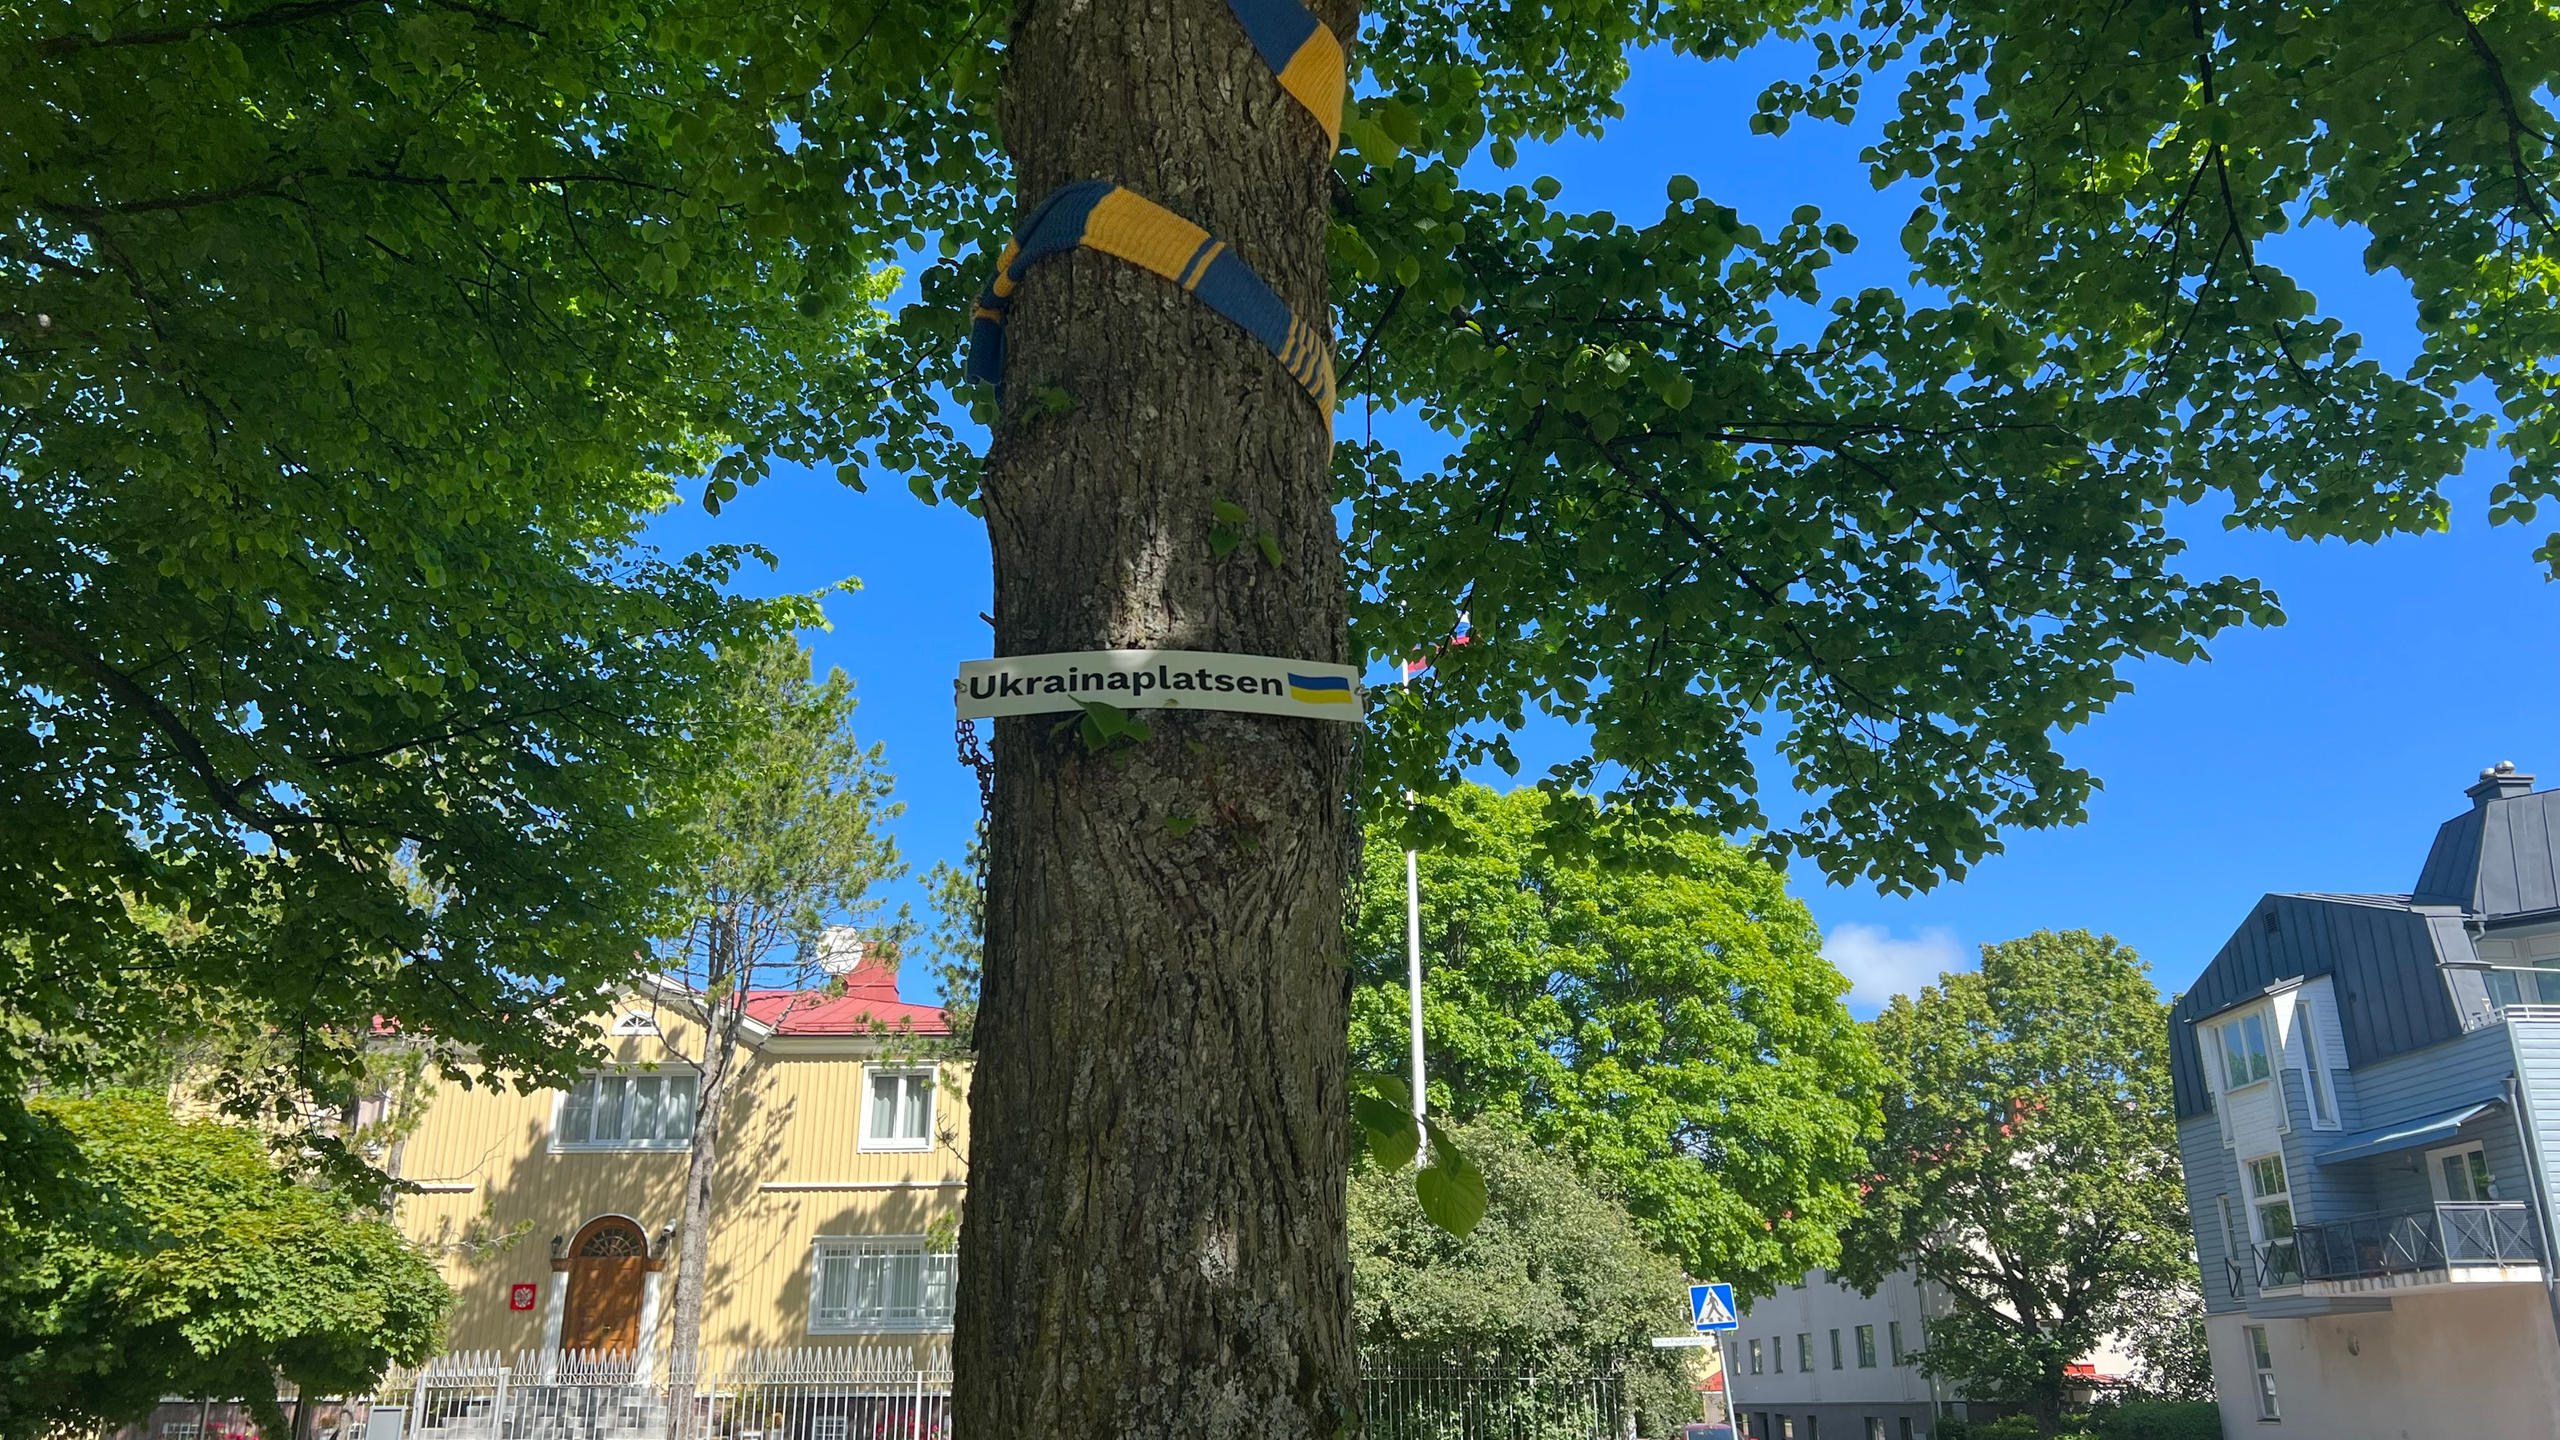 La bandera de Ucrania rodeando el tronco de un árbol